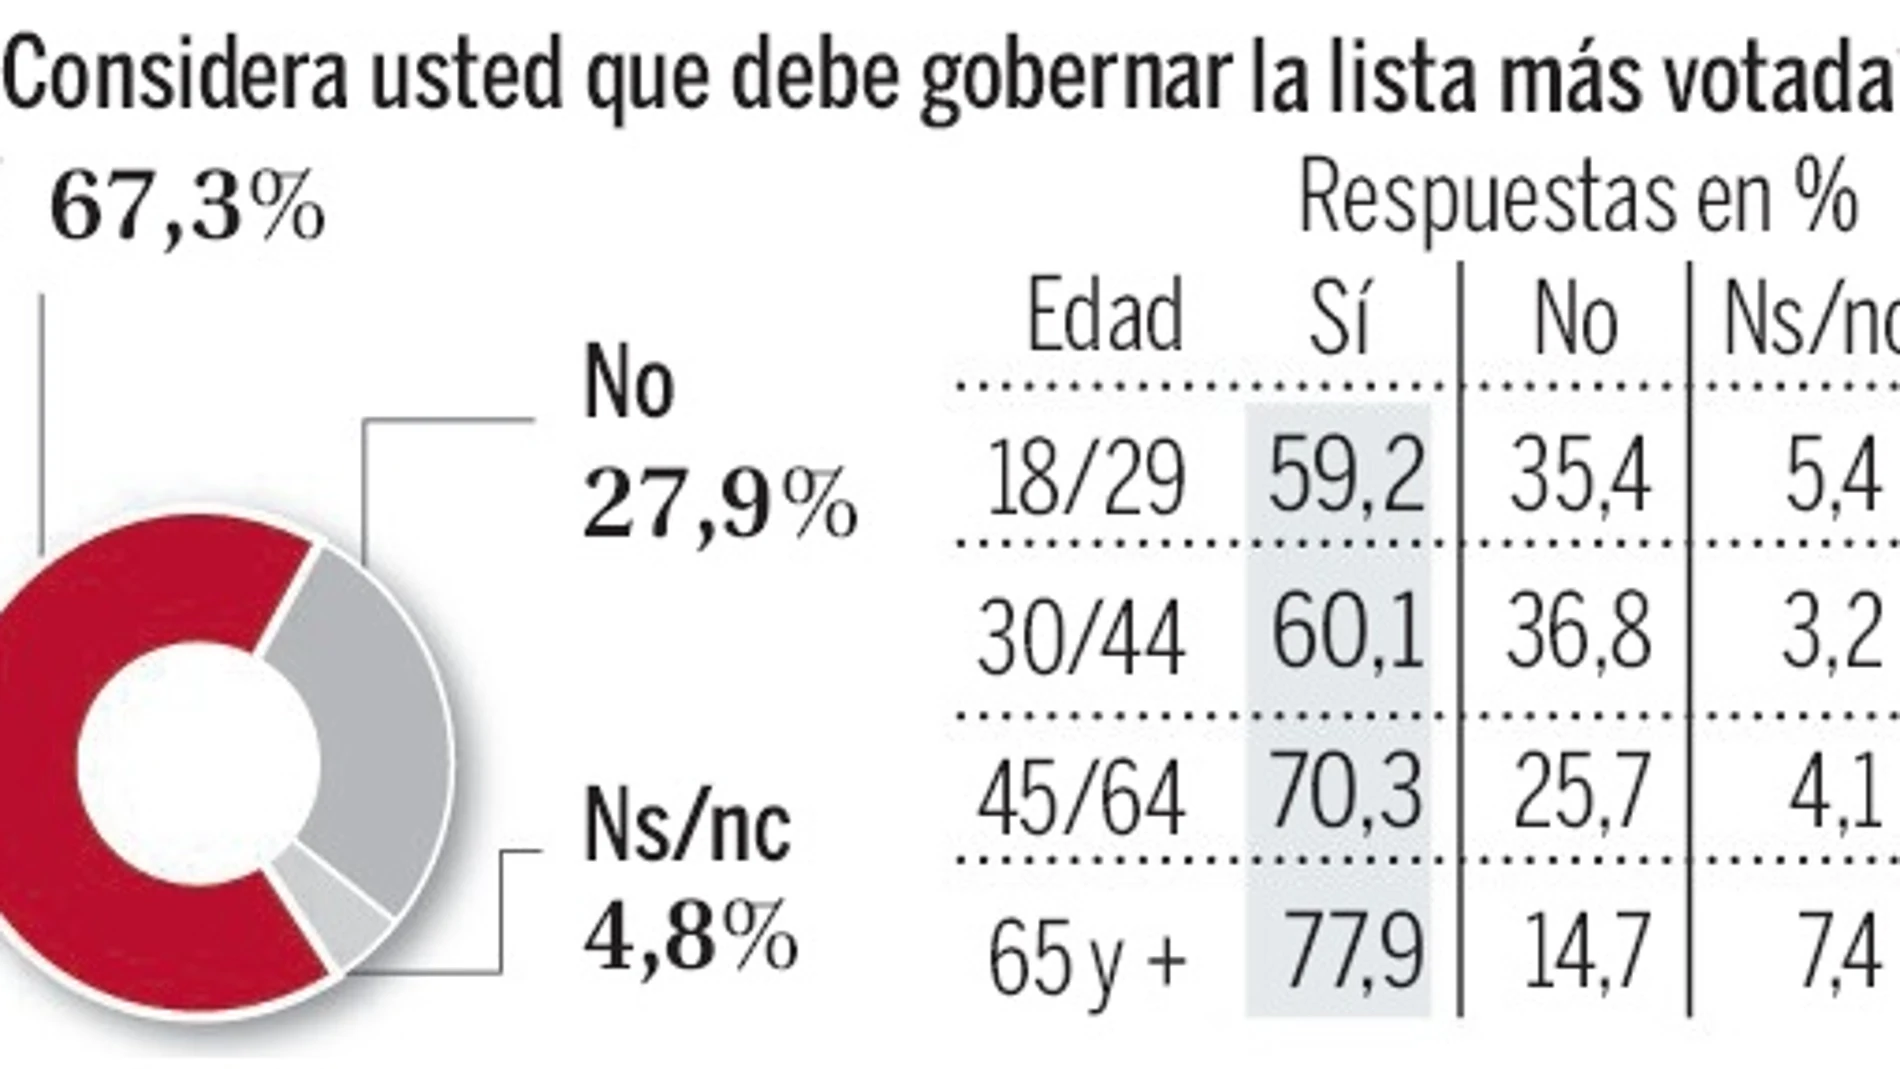 Sólo un 32,8% de los españoles se muestra a favor de un gobierno de coalición entre el Partido Popular y los socialistas